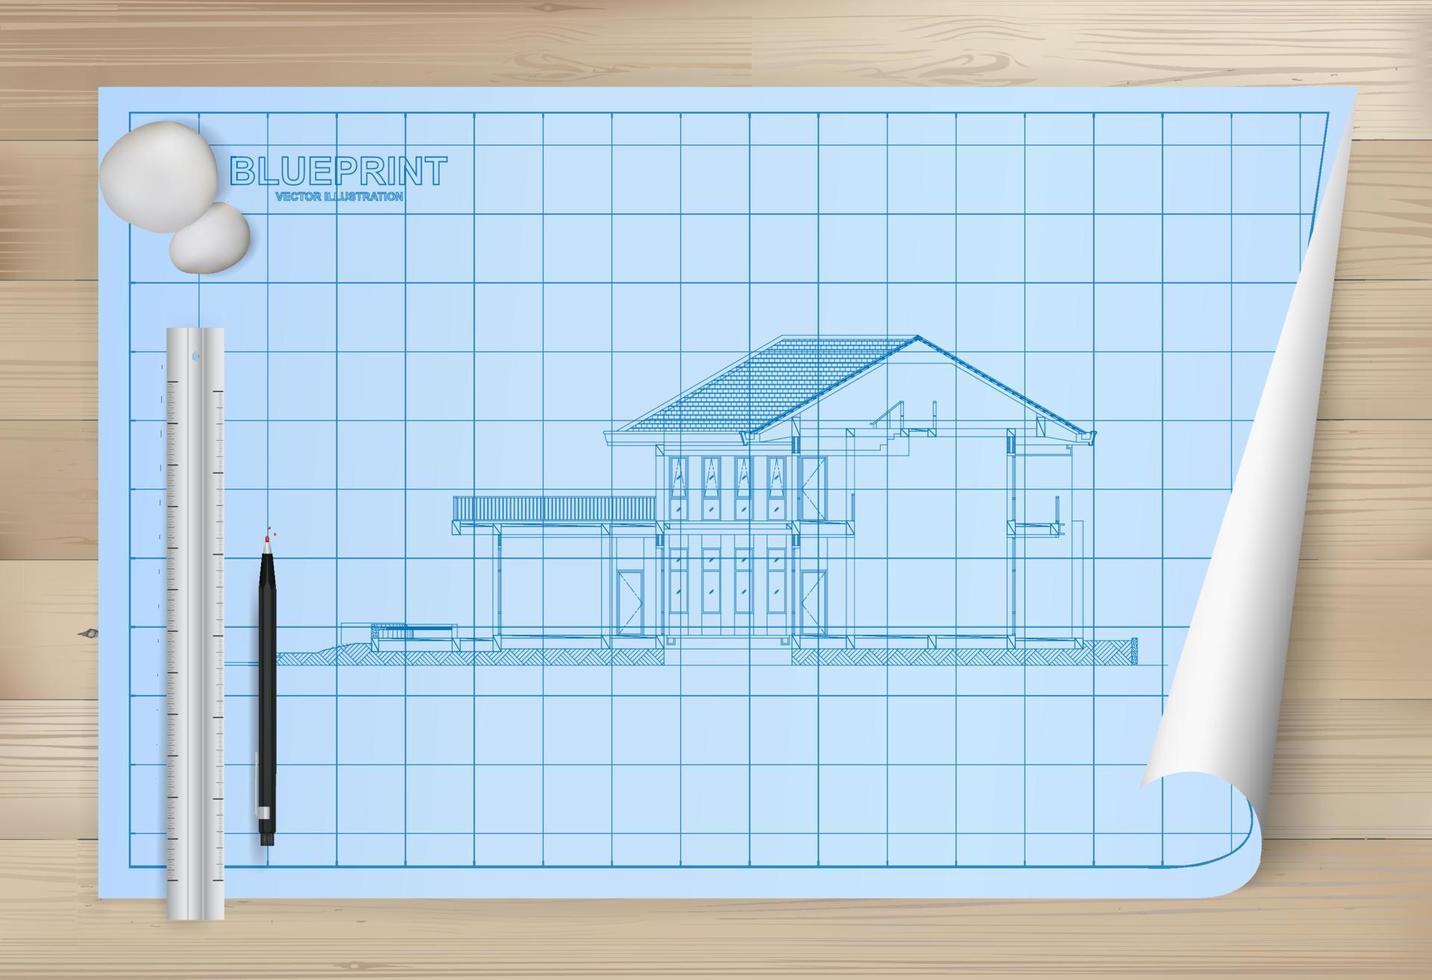 idén om hus på blåkopia papper bakgrund. arkitektoniska ritpapper på trä textur bakgrund. vektor. vektor